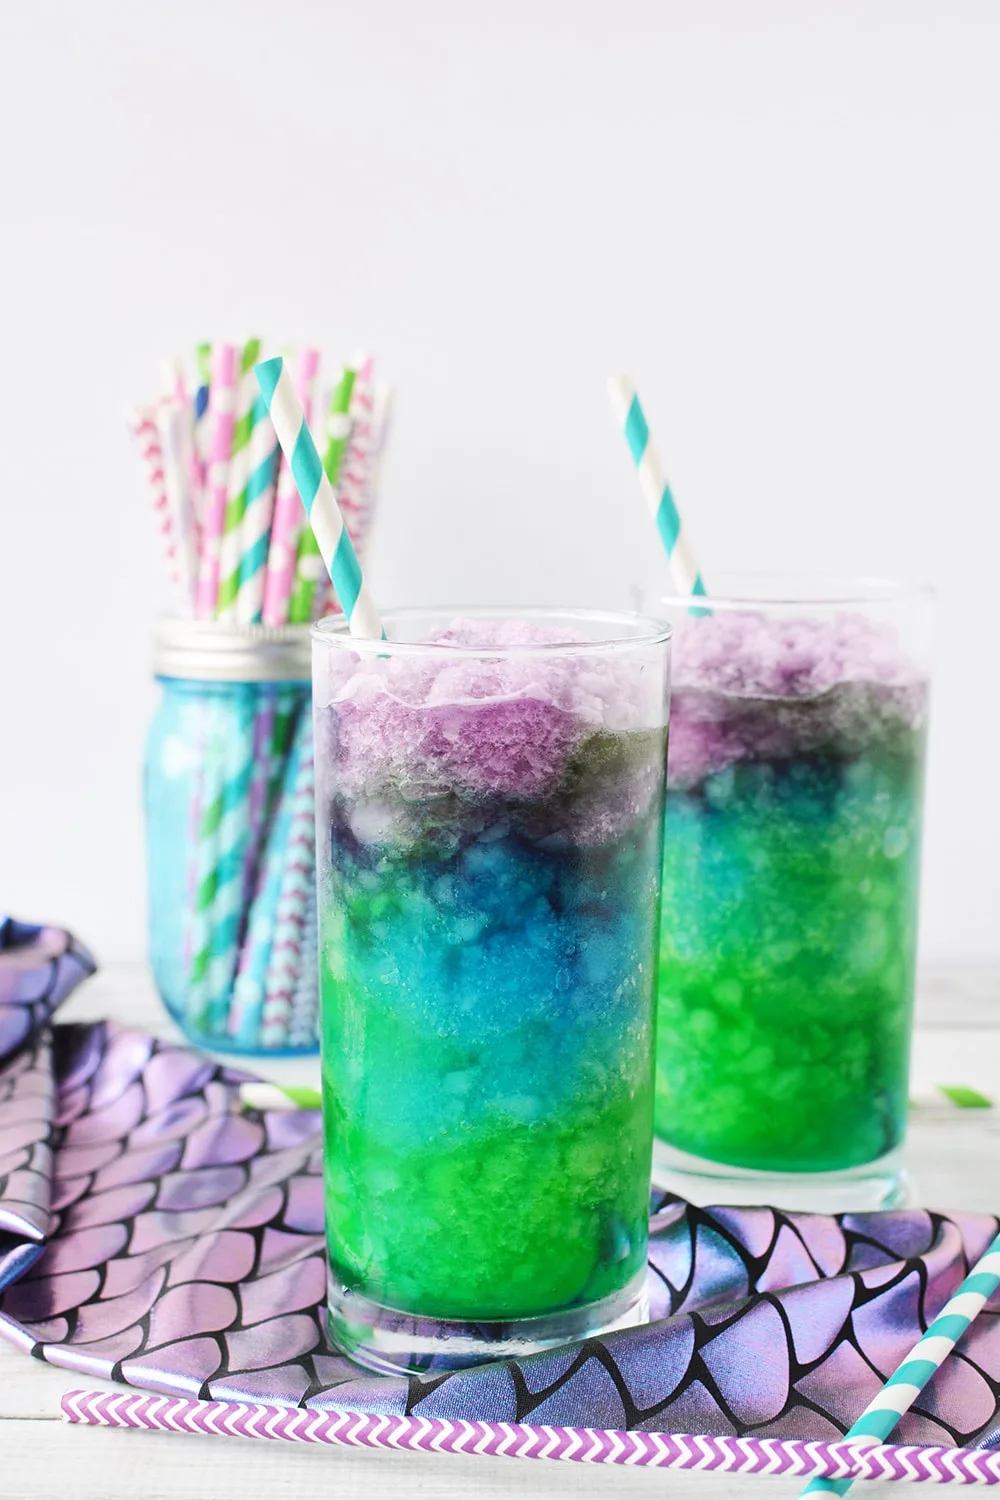 Mermaid lemonade icy drinks layered in glasses.